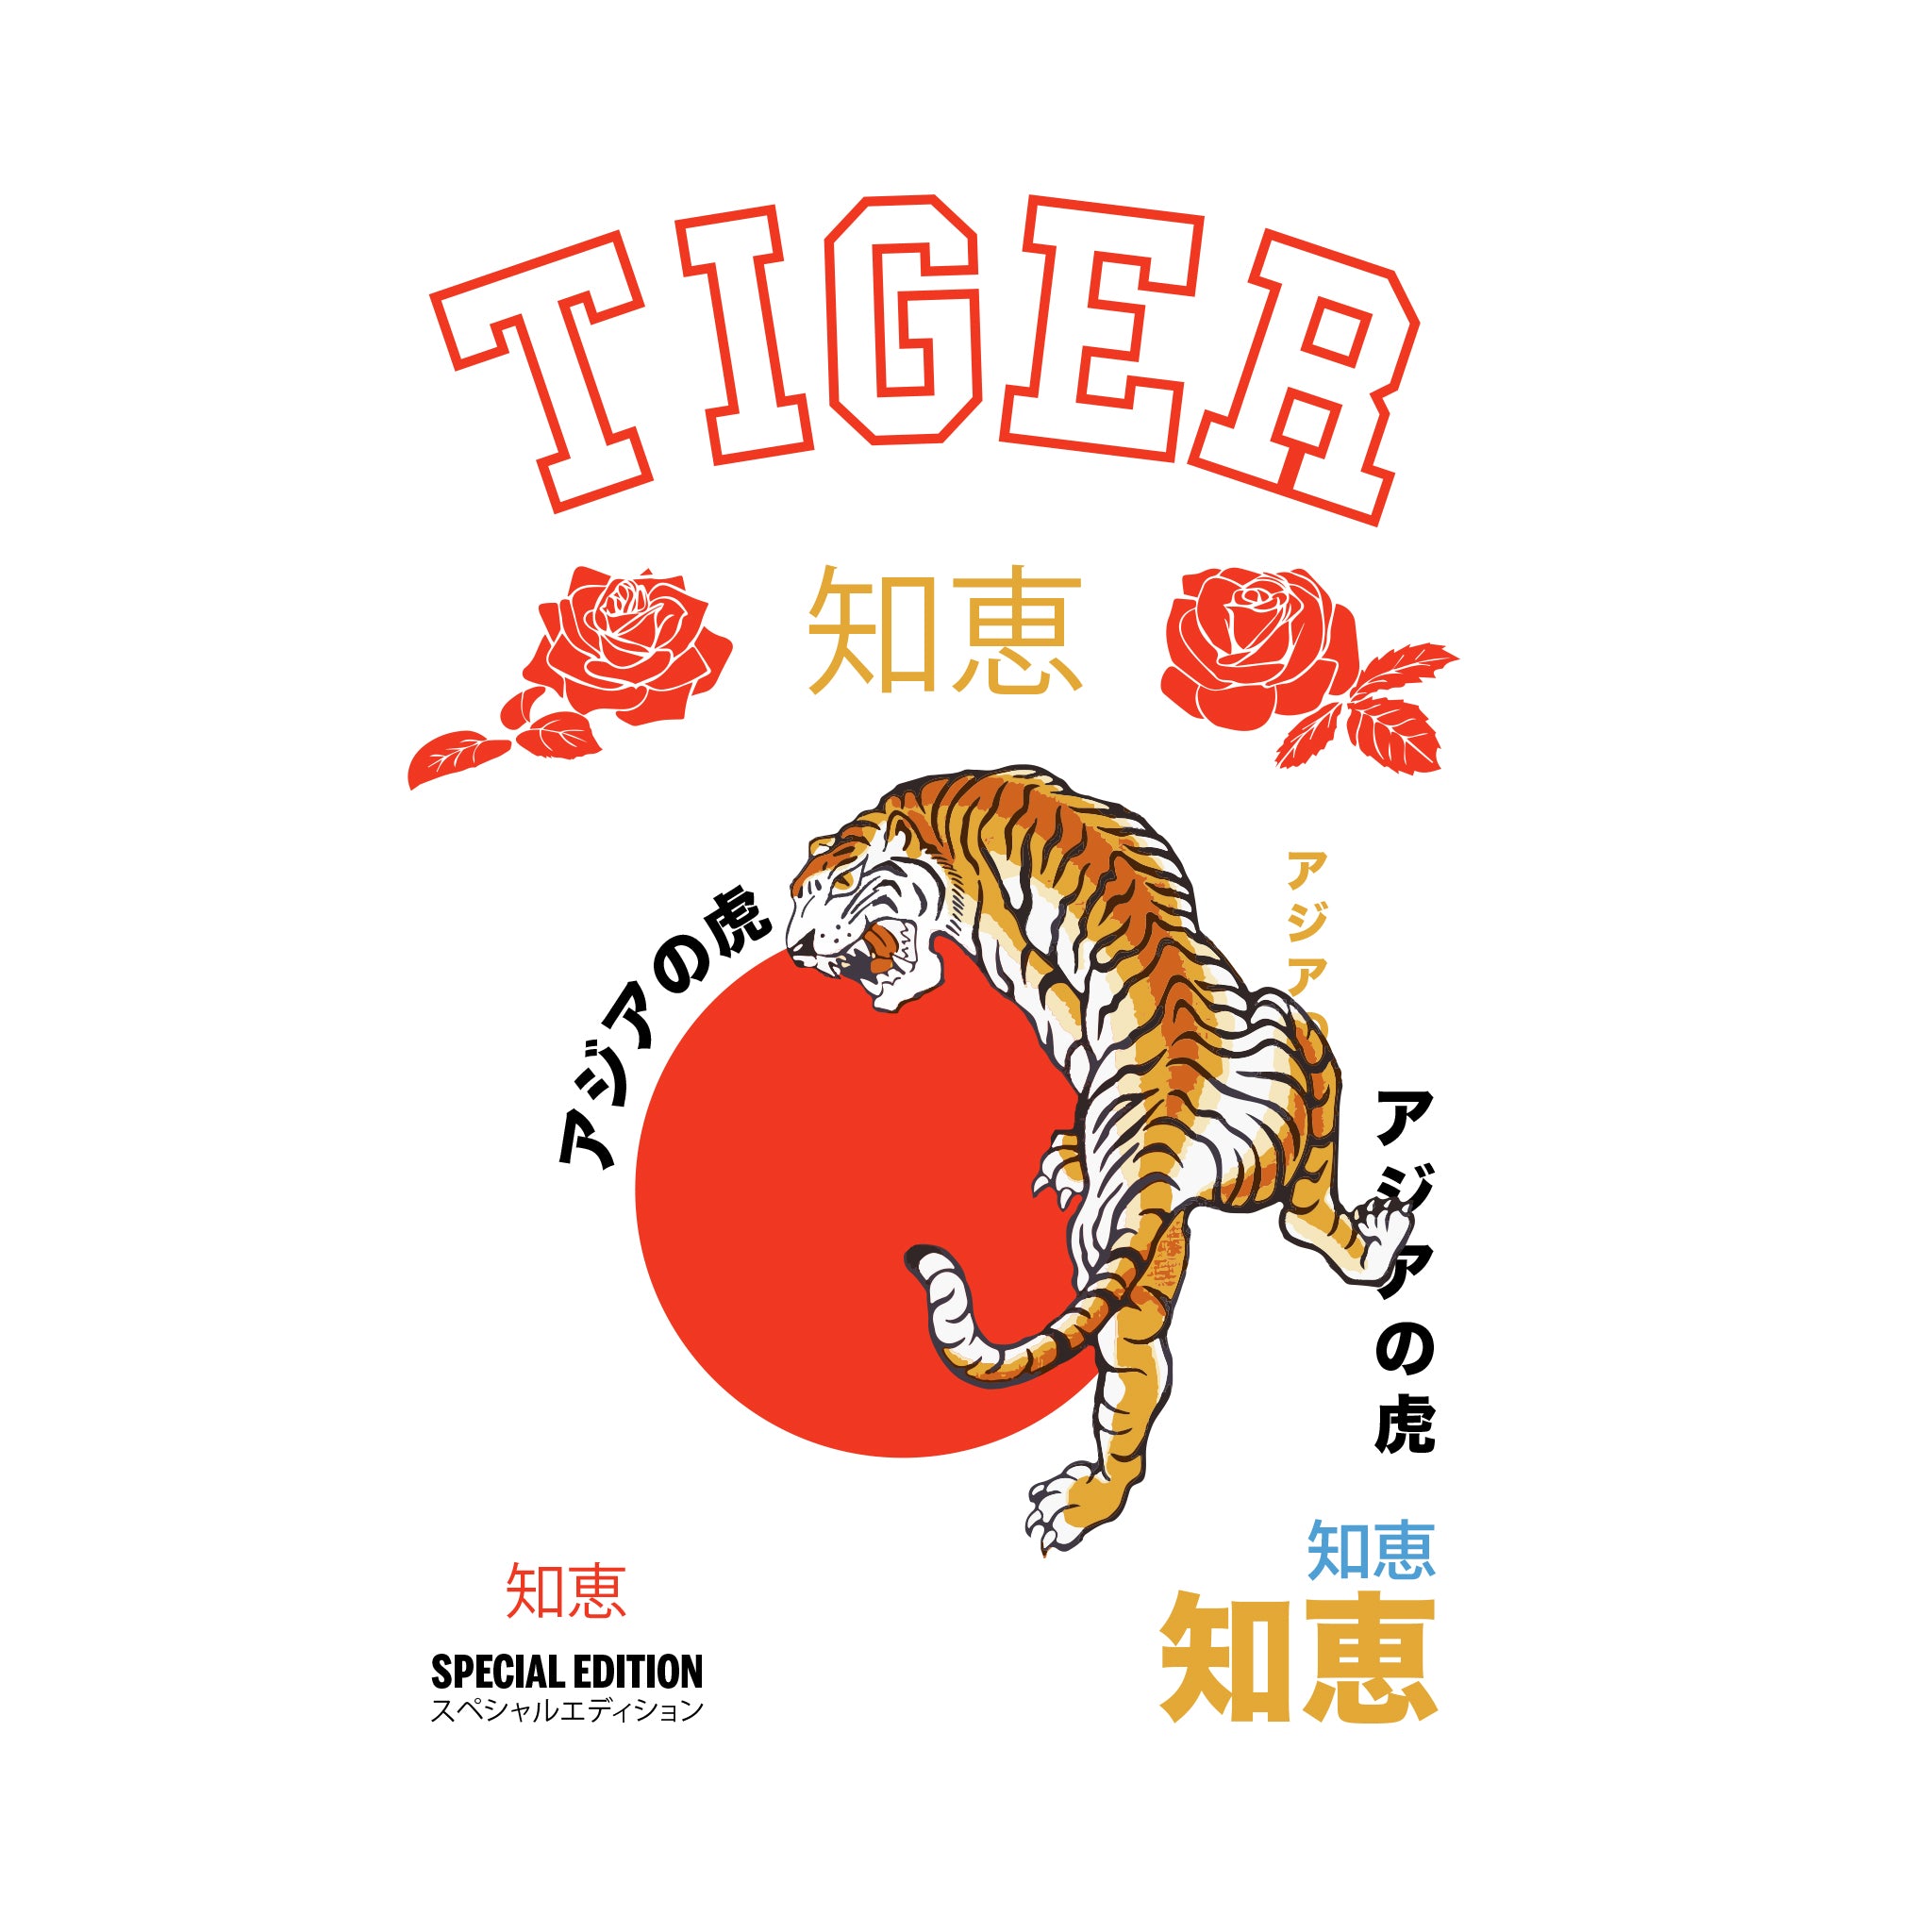 Tiger special